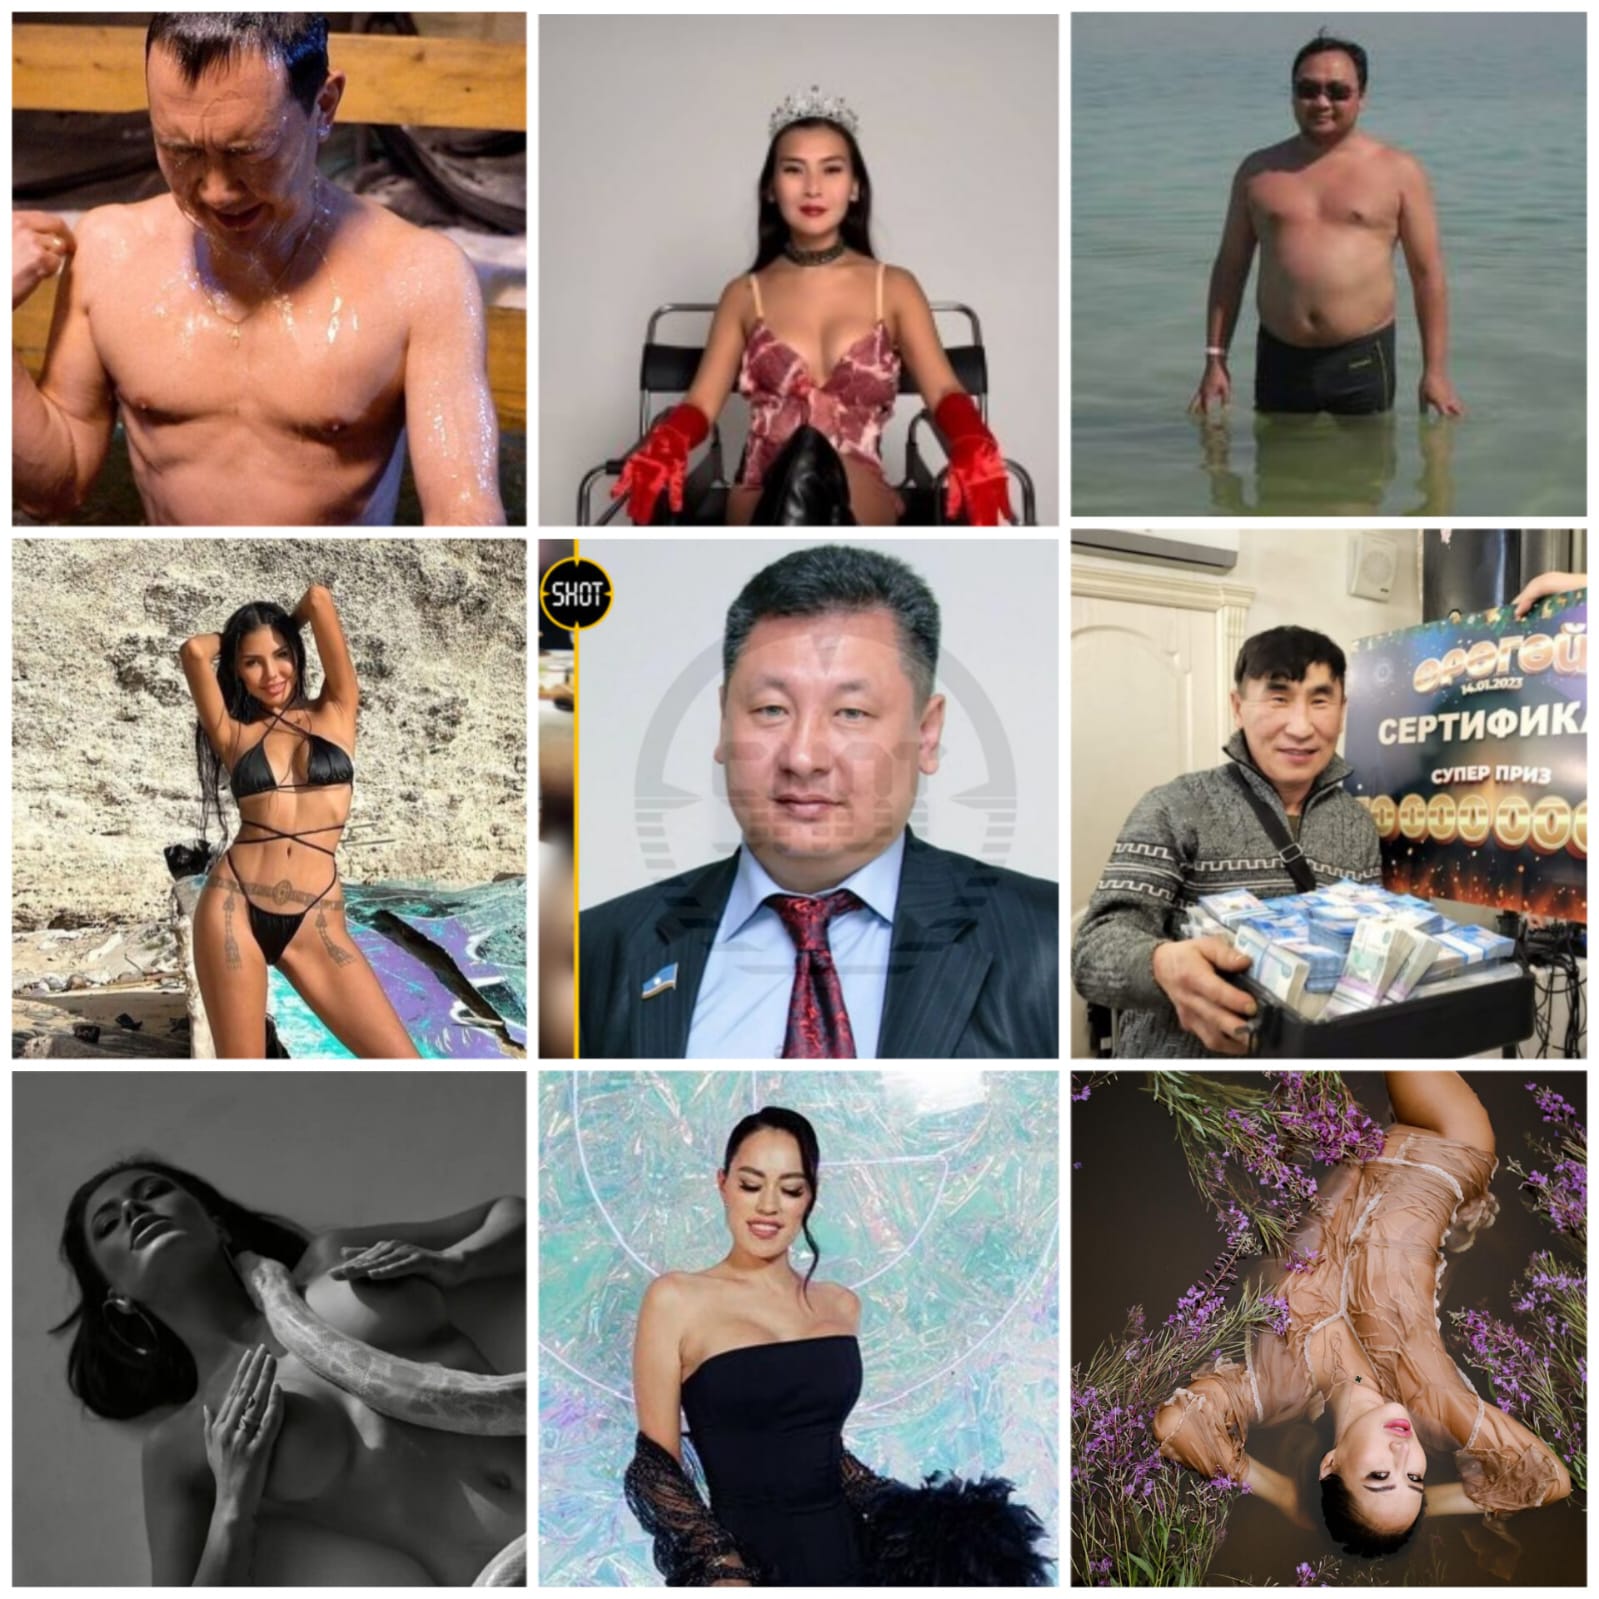 Сексуальная жизнь в Сибири